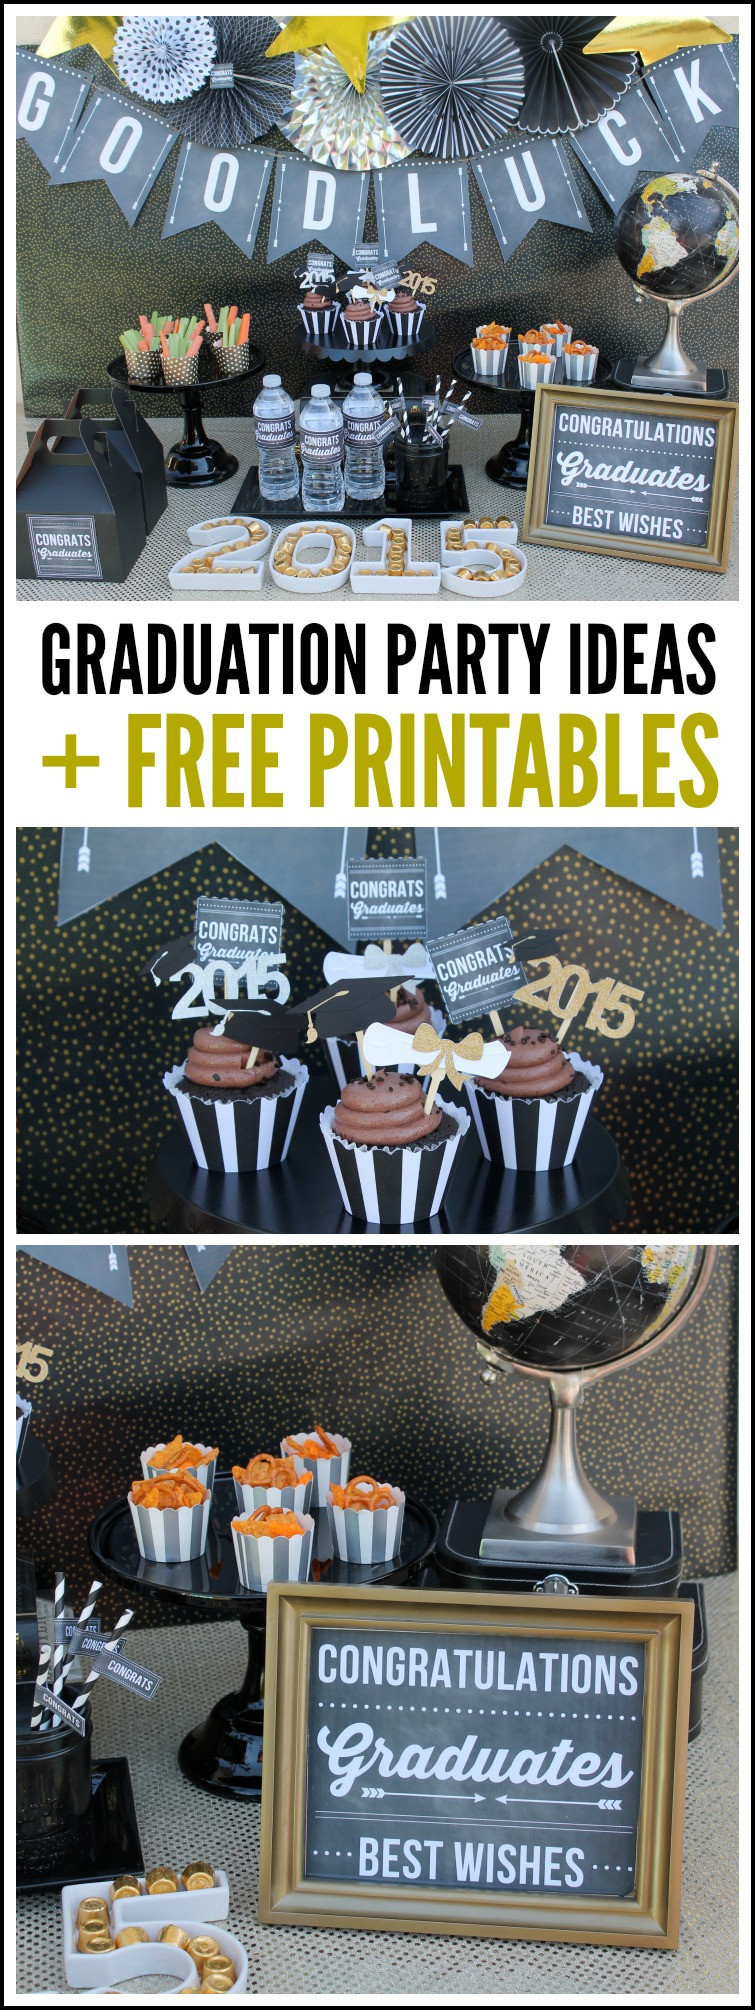 Graduation Party Picture Ideas
 Graduation Party Ideas Free Printables